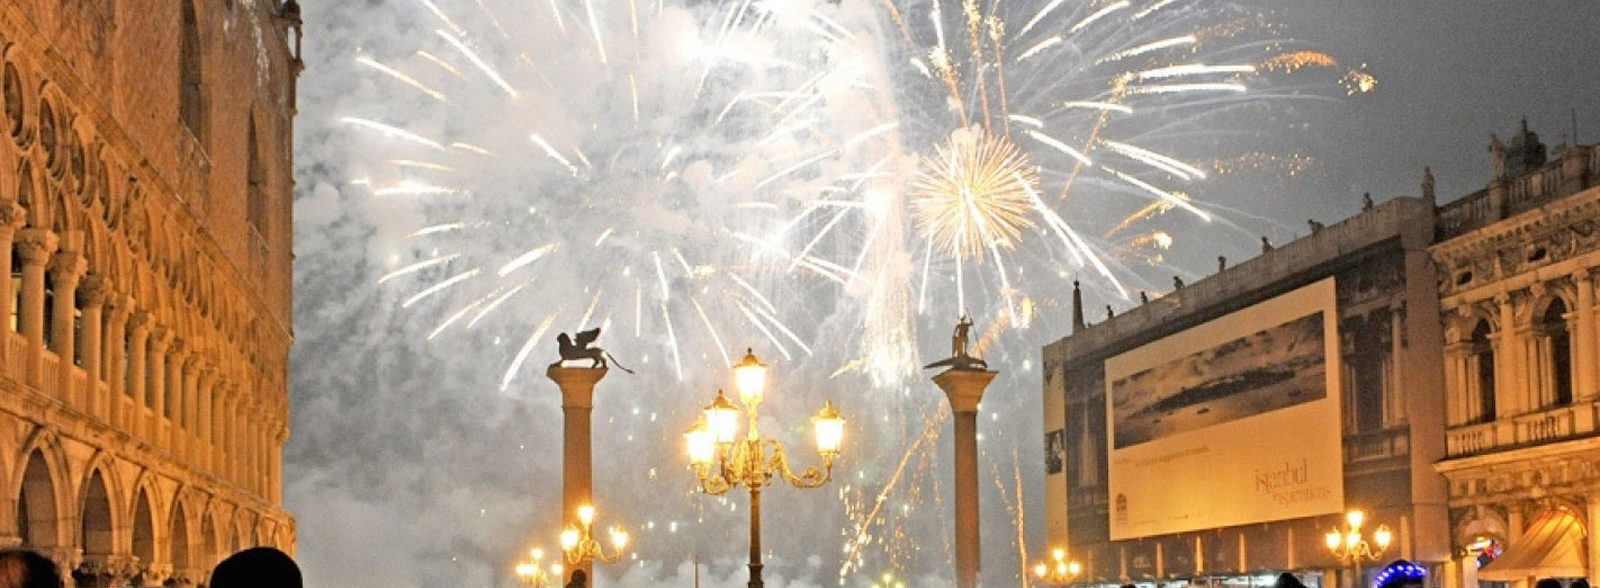 Capodanno a Venezia: cosa fare e gli eventi da non perdere